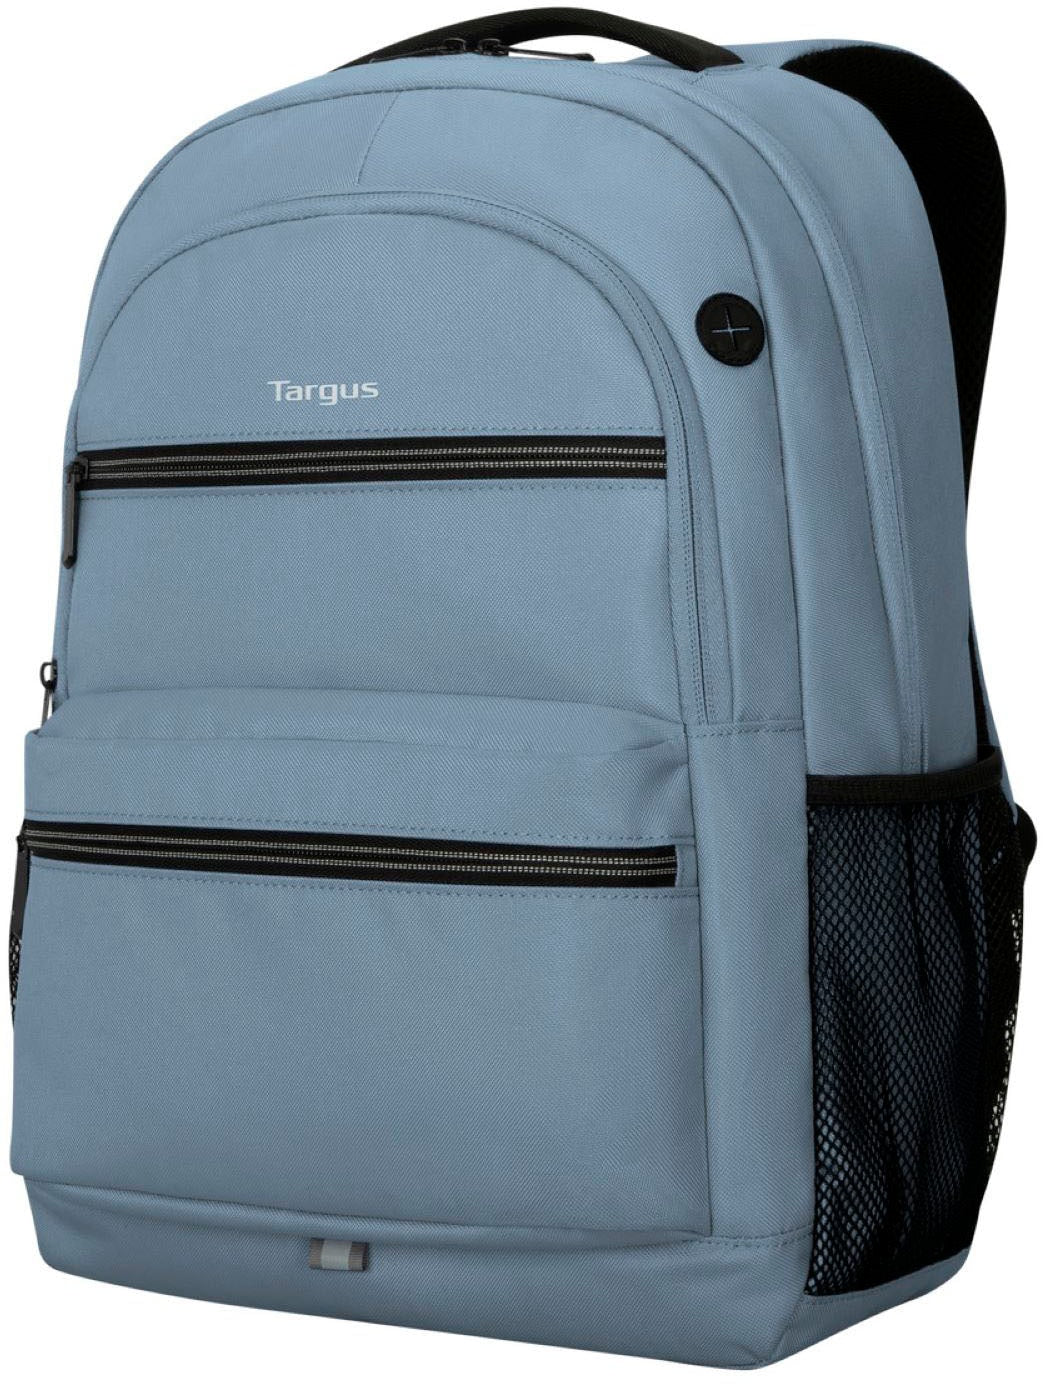 Targus - Octave II Backpack for 15.6” Laptops - Blue_4